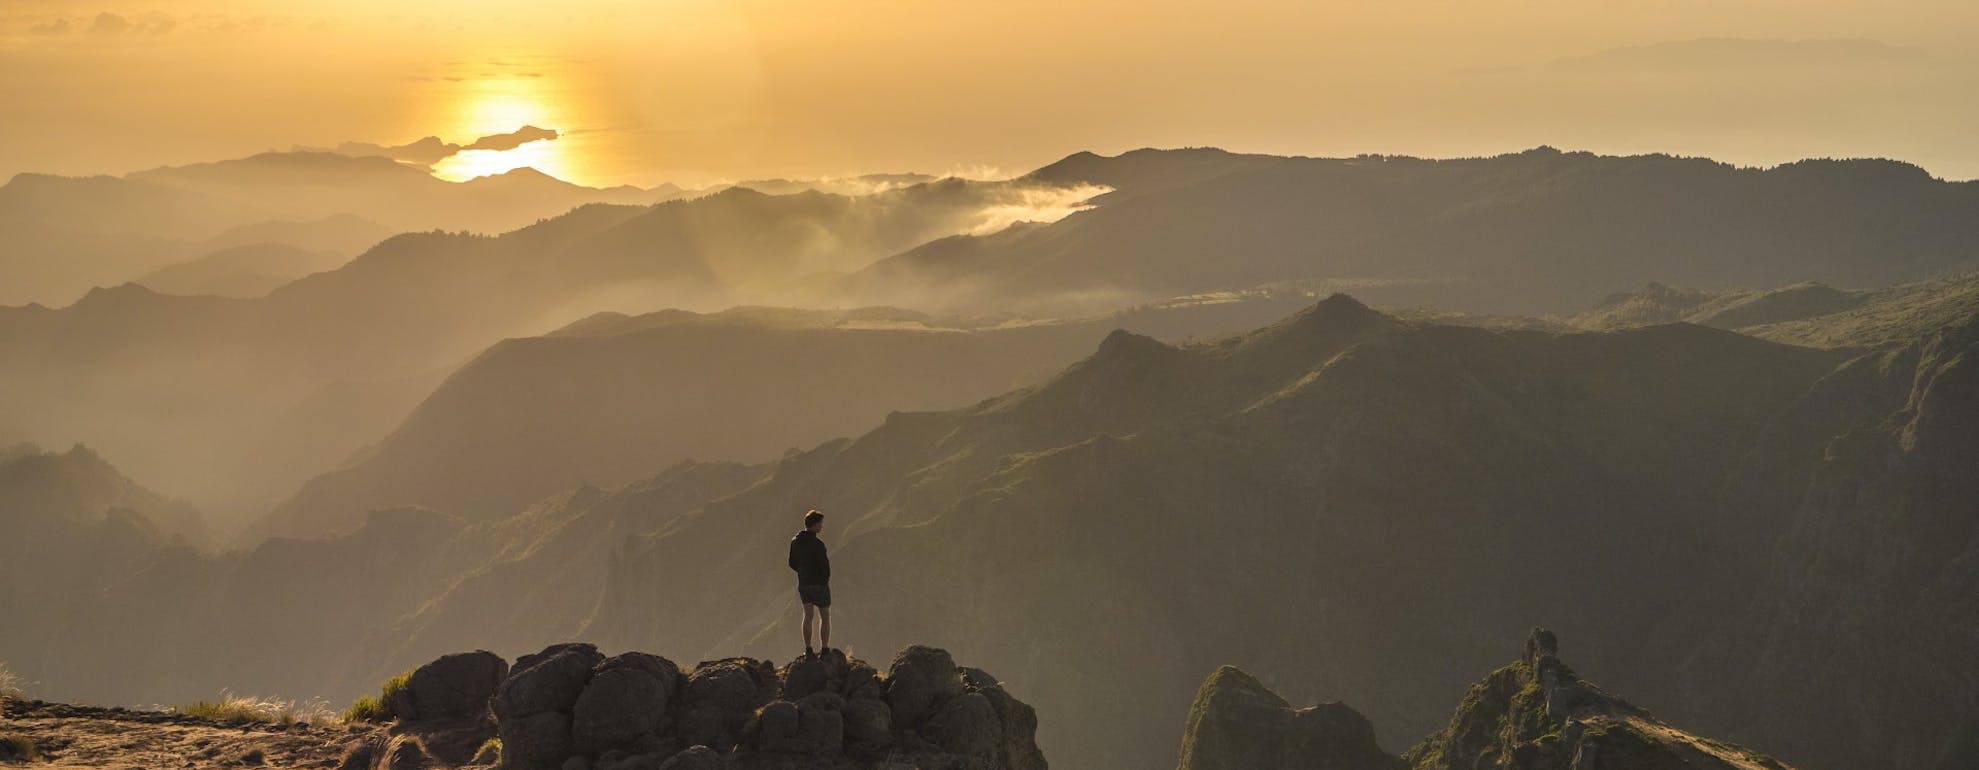 World's-Best-Hikes-5-Pico-Ruivo-Madeira